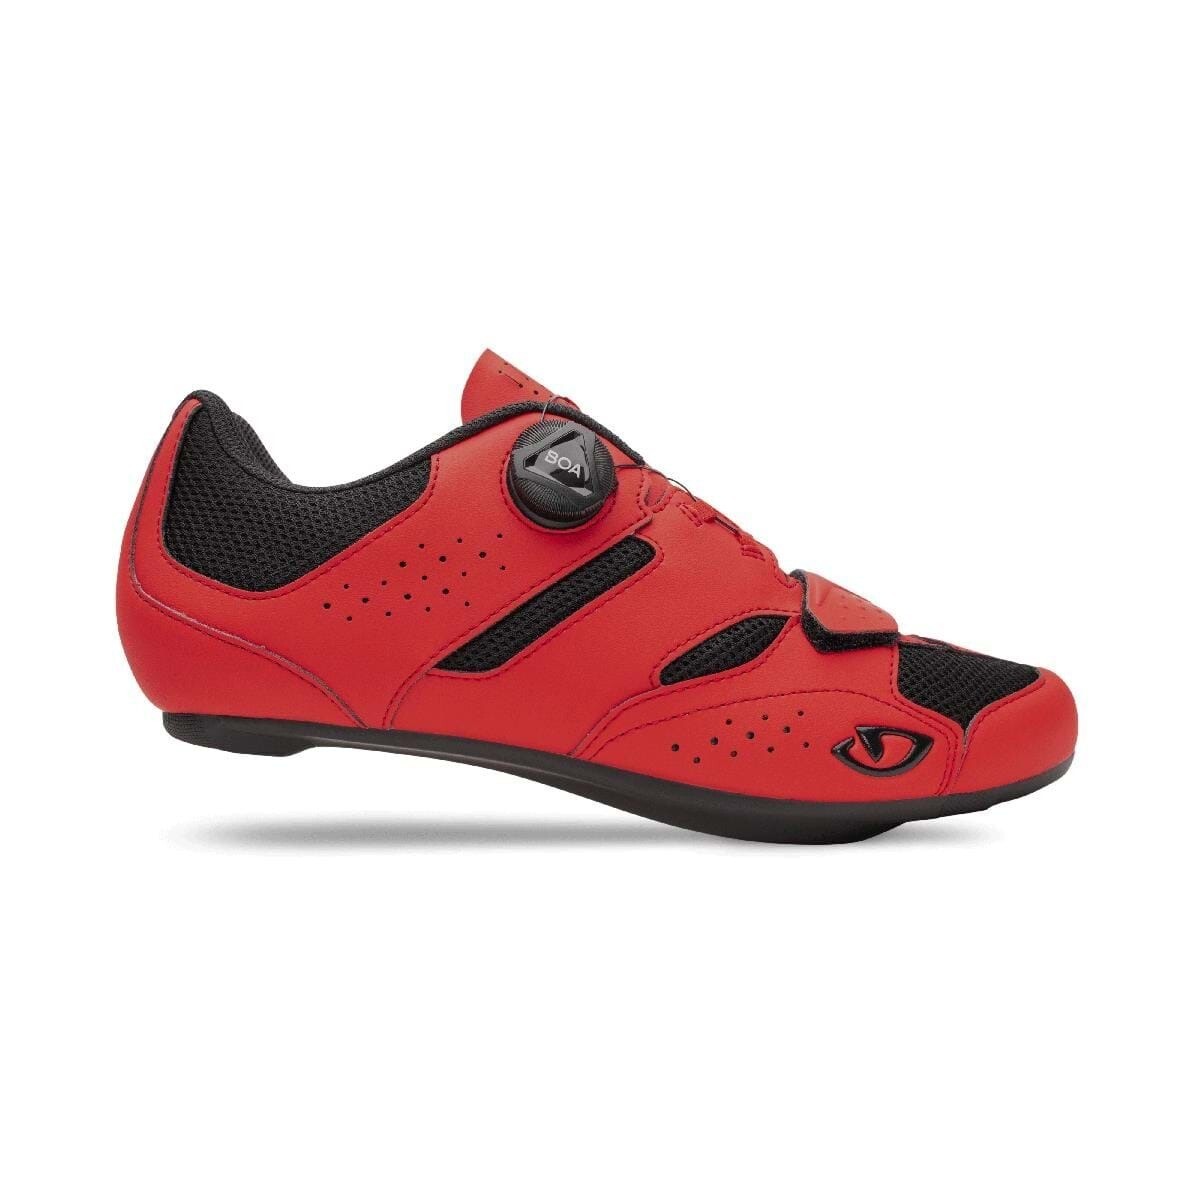 Giro Savix II Cycling Shoe- Bright Red